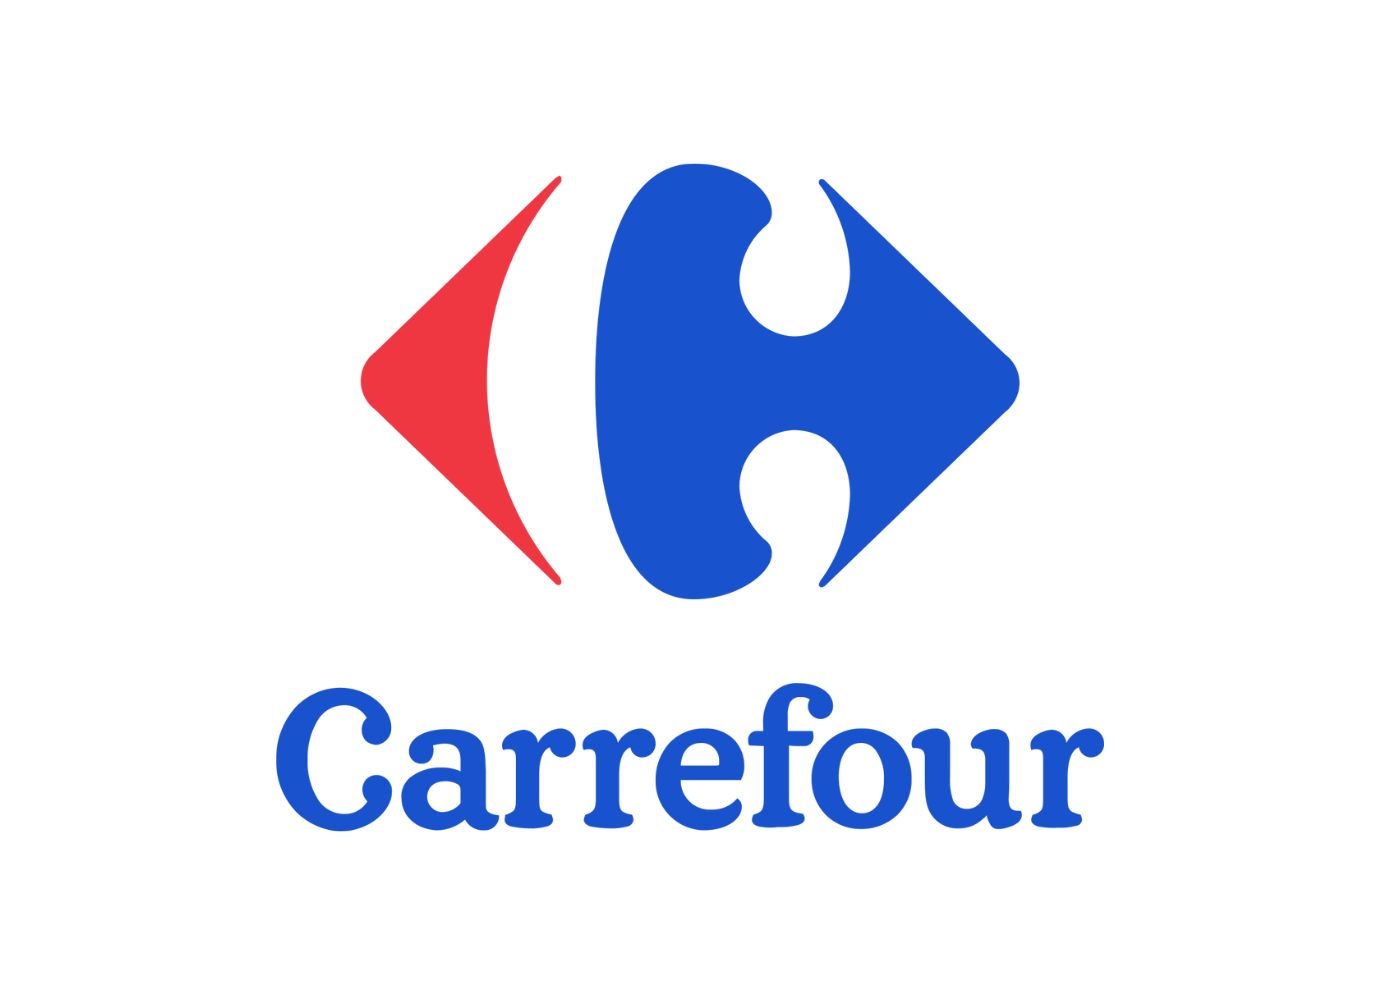 Conheça mais sobre essa empresa! Fonte: Carrefour.